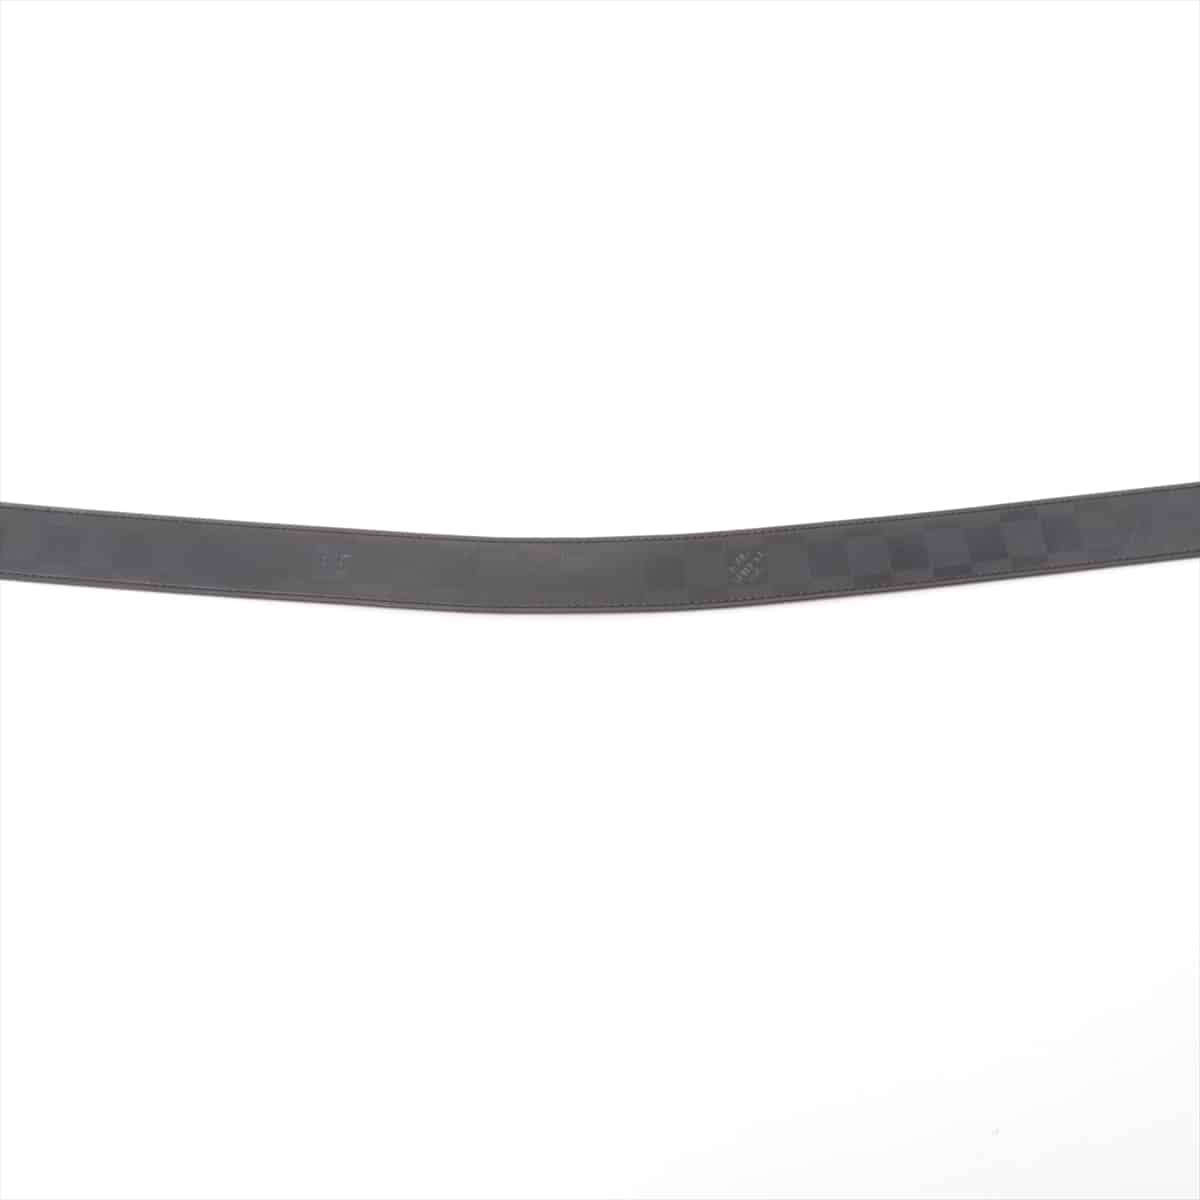 Louis Vuitton M9674 Ceinture Boston BC0126 Belt 95/38 PVC & leather Black